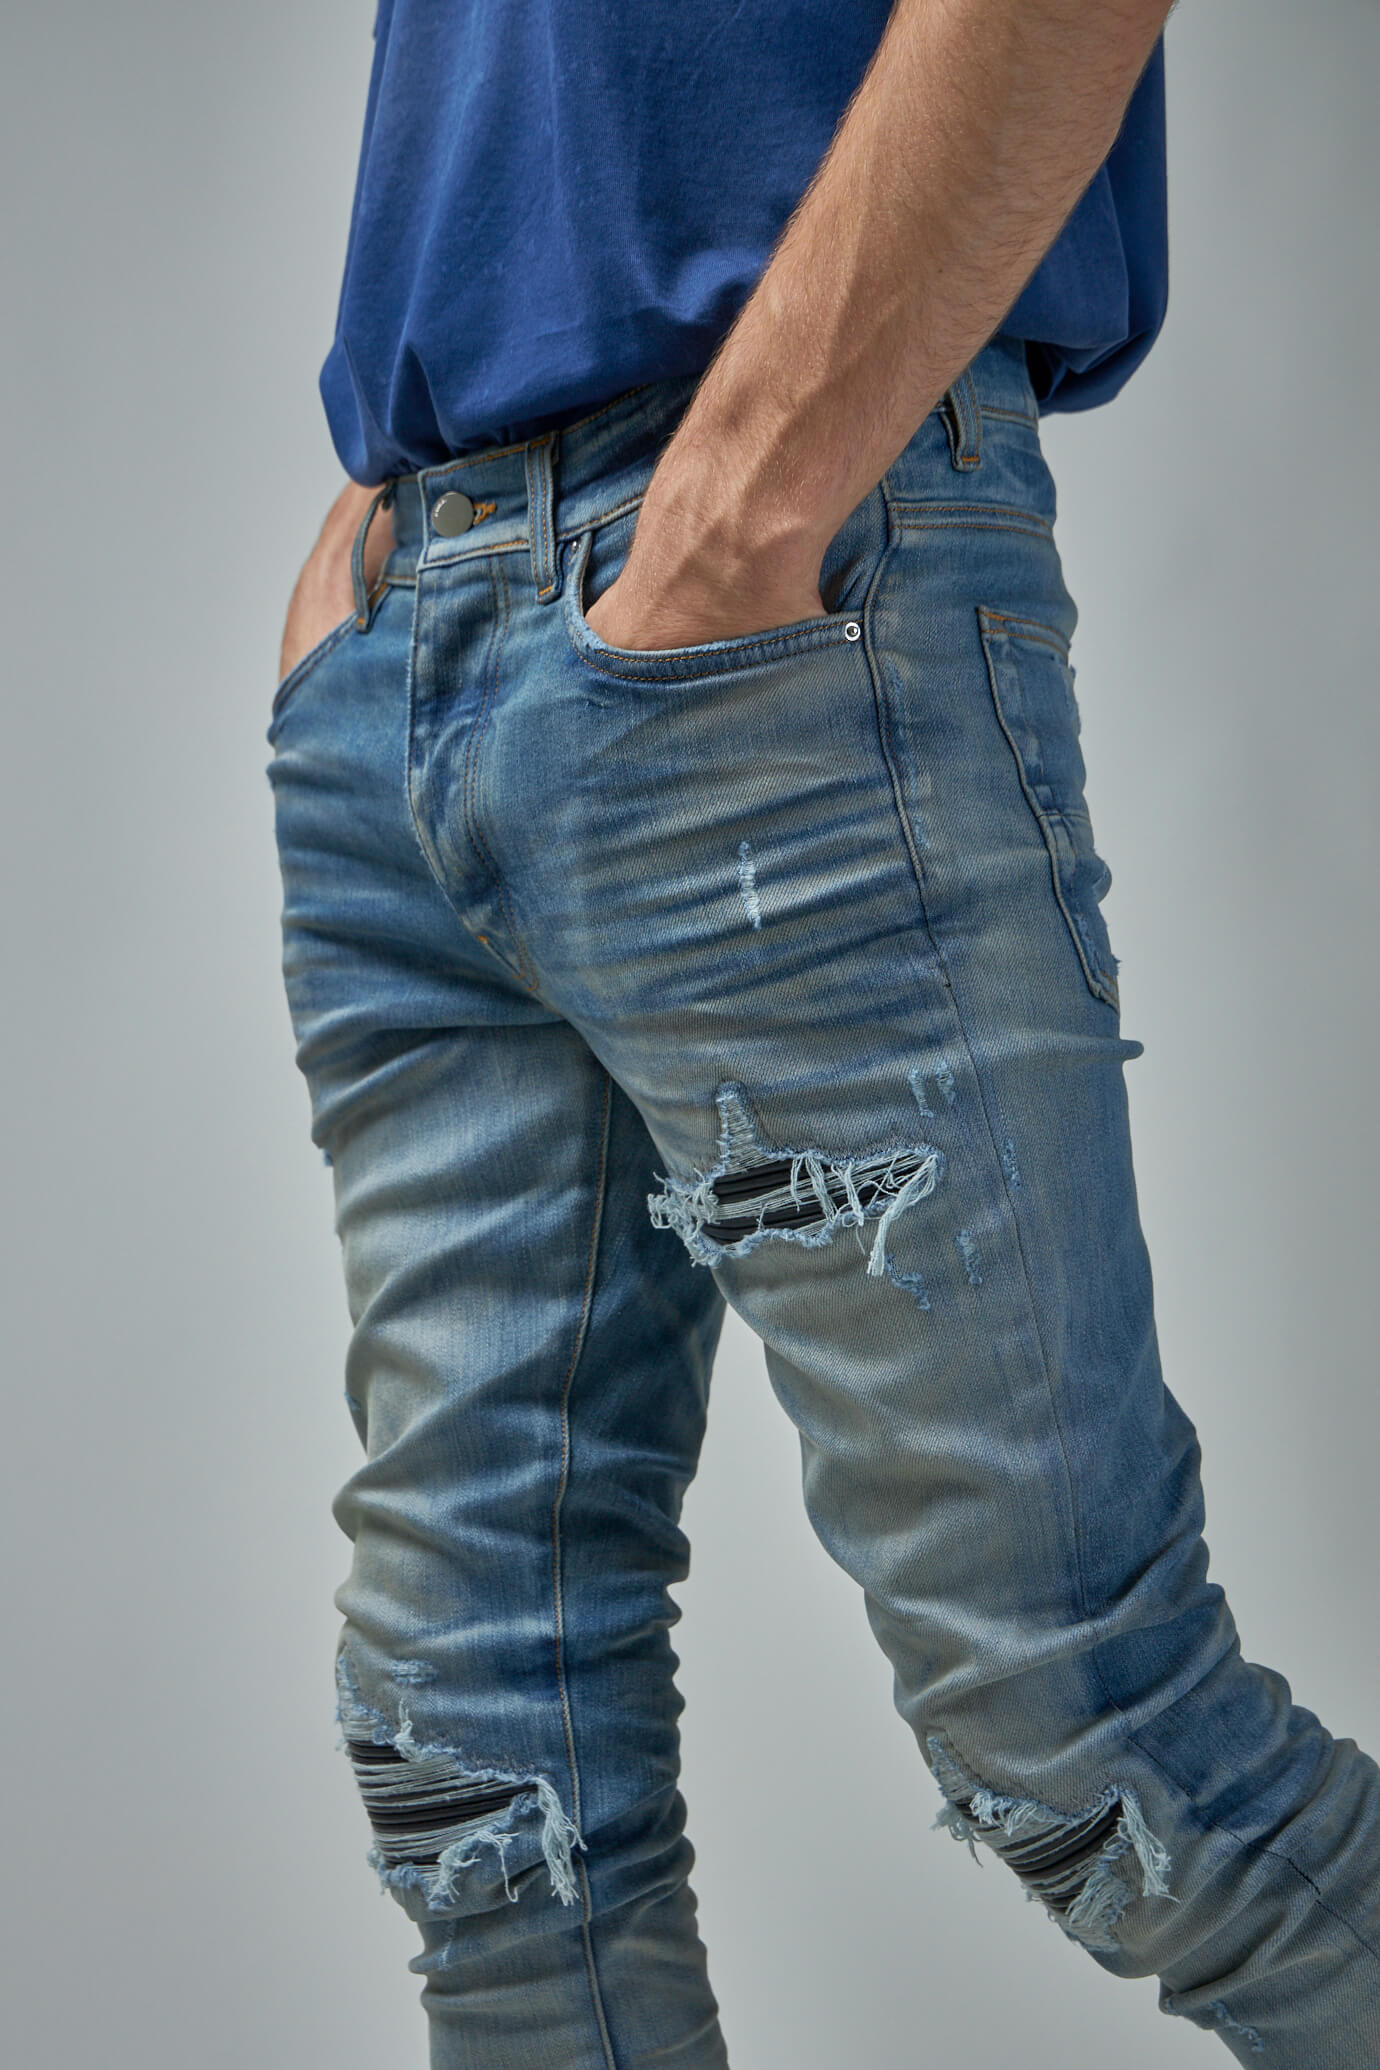 MX1 Leather Jean